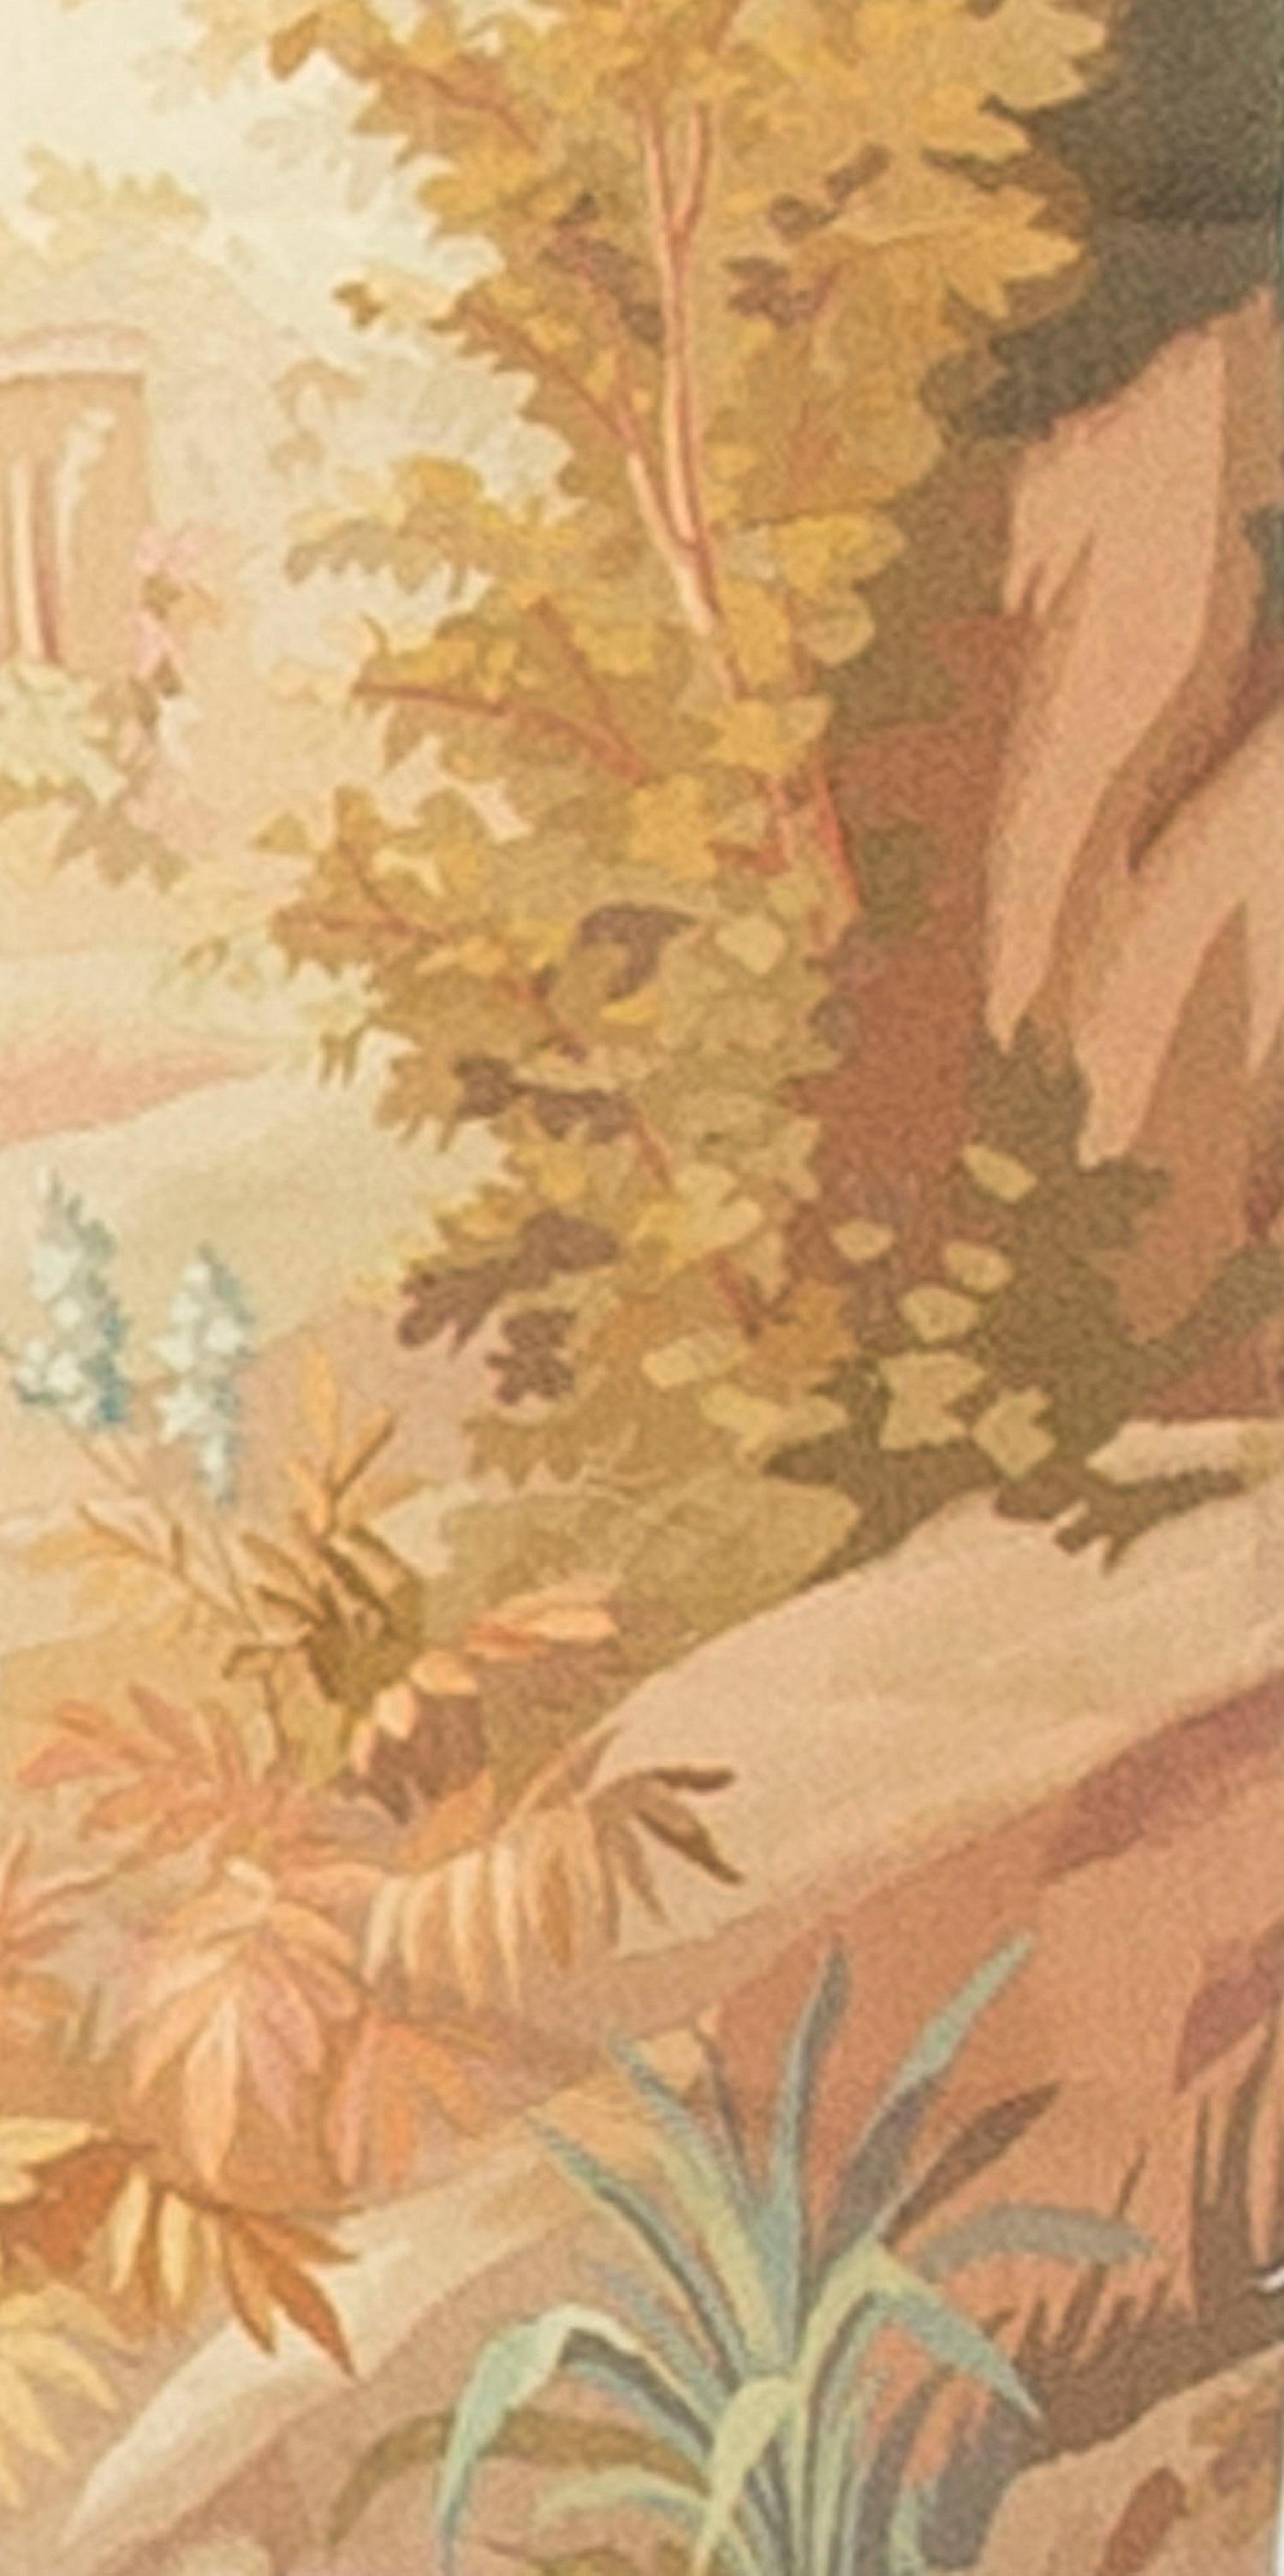 Dans des couleurs douces et pâles, la scène a un air de printemps, avec l'oiseau qui joue à se faufiler entre les branches des rochers.
 